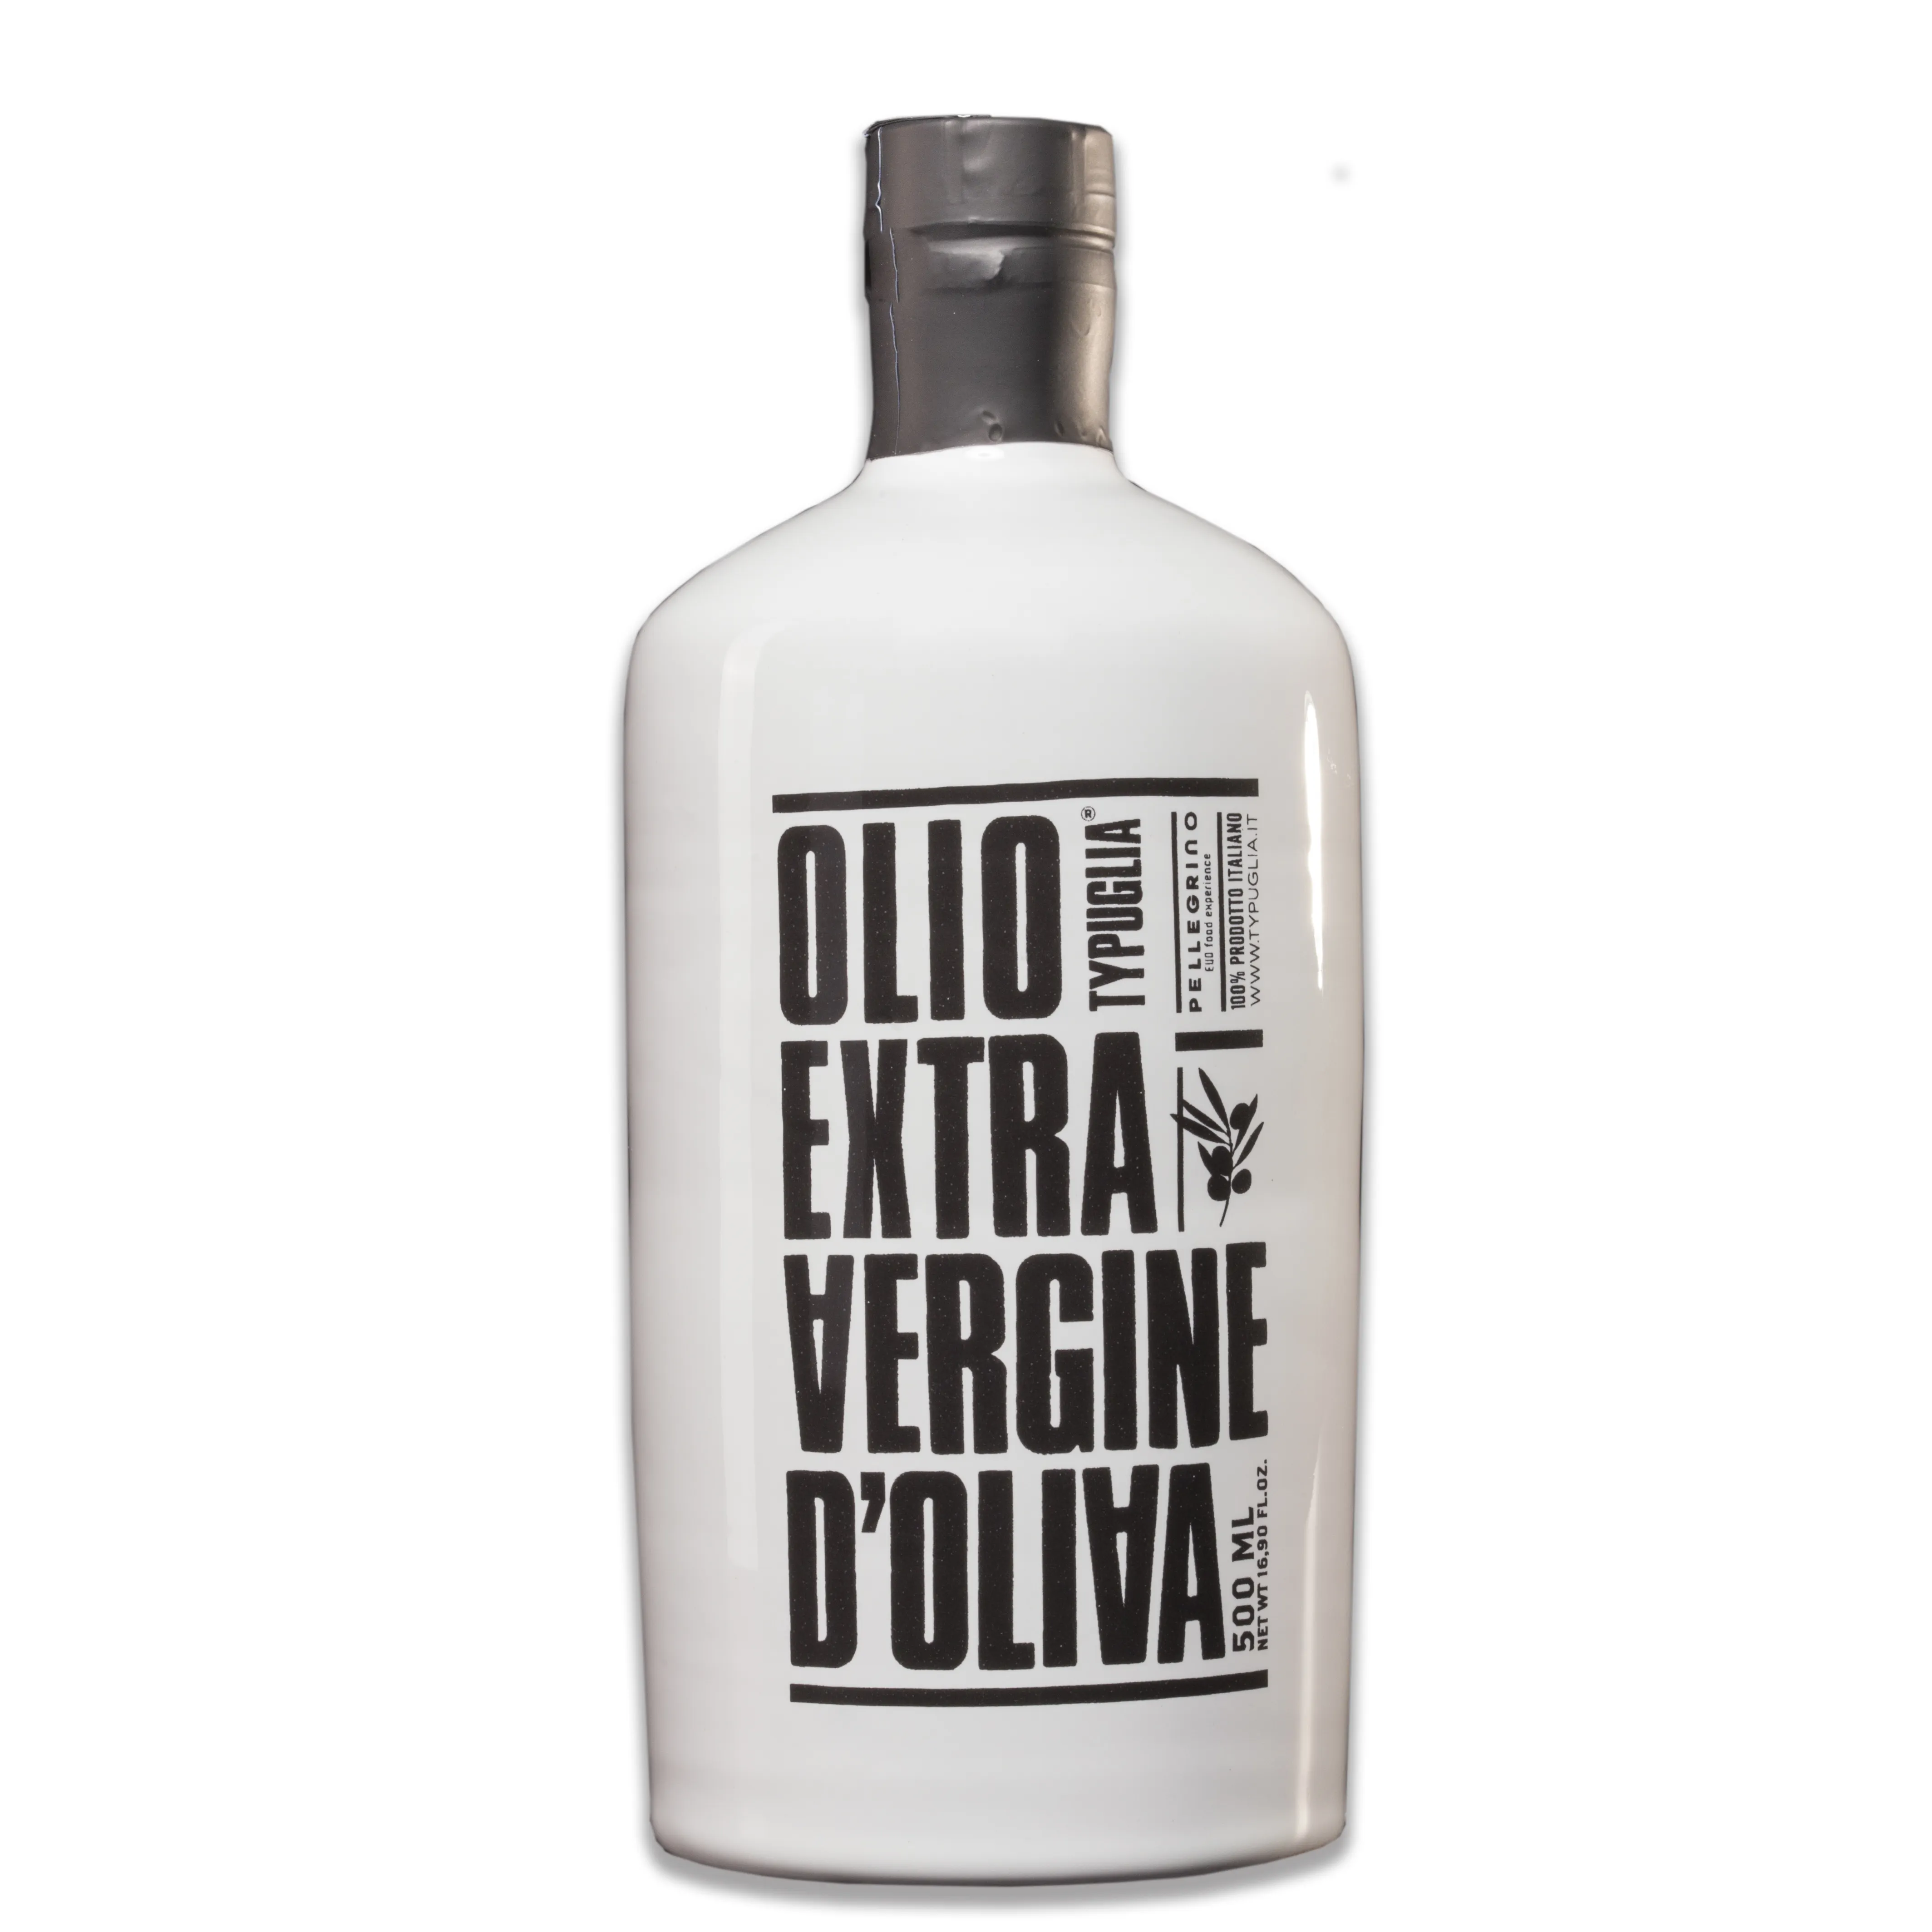 น้ำมันมะกอกในขวด TY Puglia บริสุทธิ์พิเศษในนำมาใช้ใหม่และเติมได้เซรามิคสีขาว0,50 LT